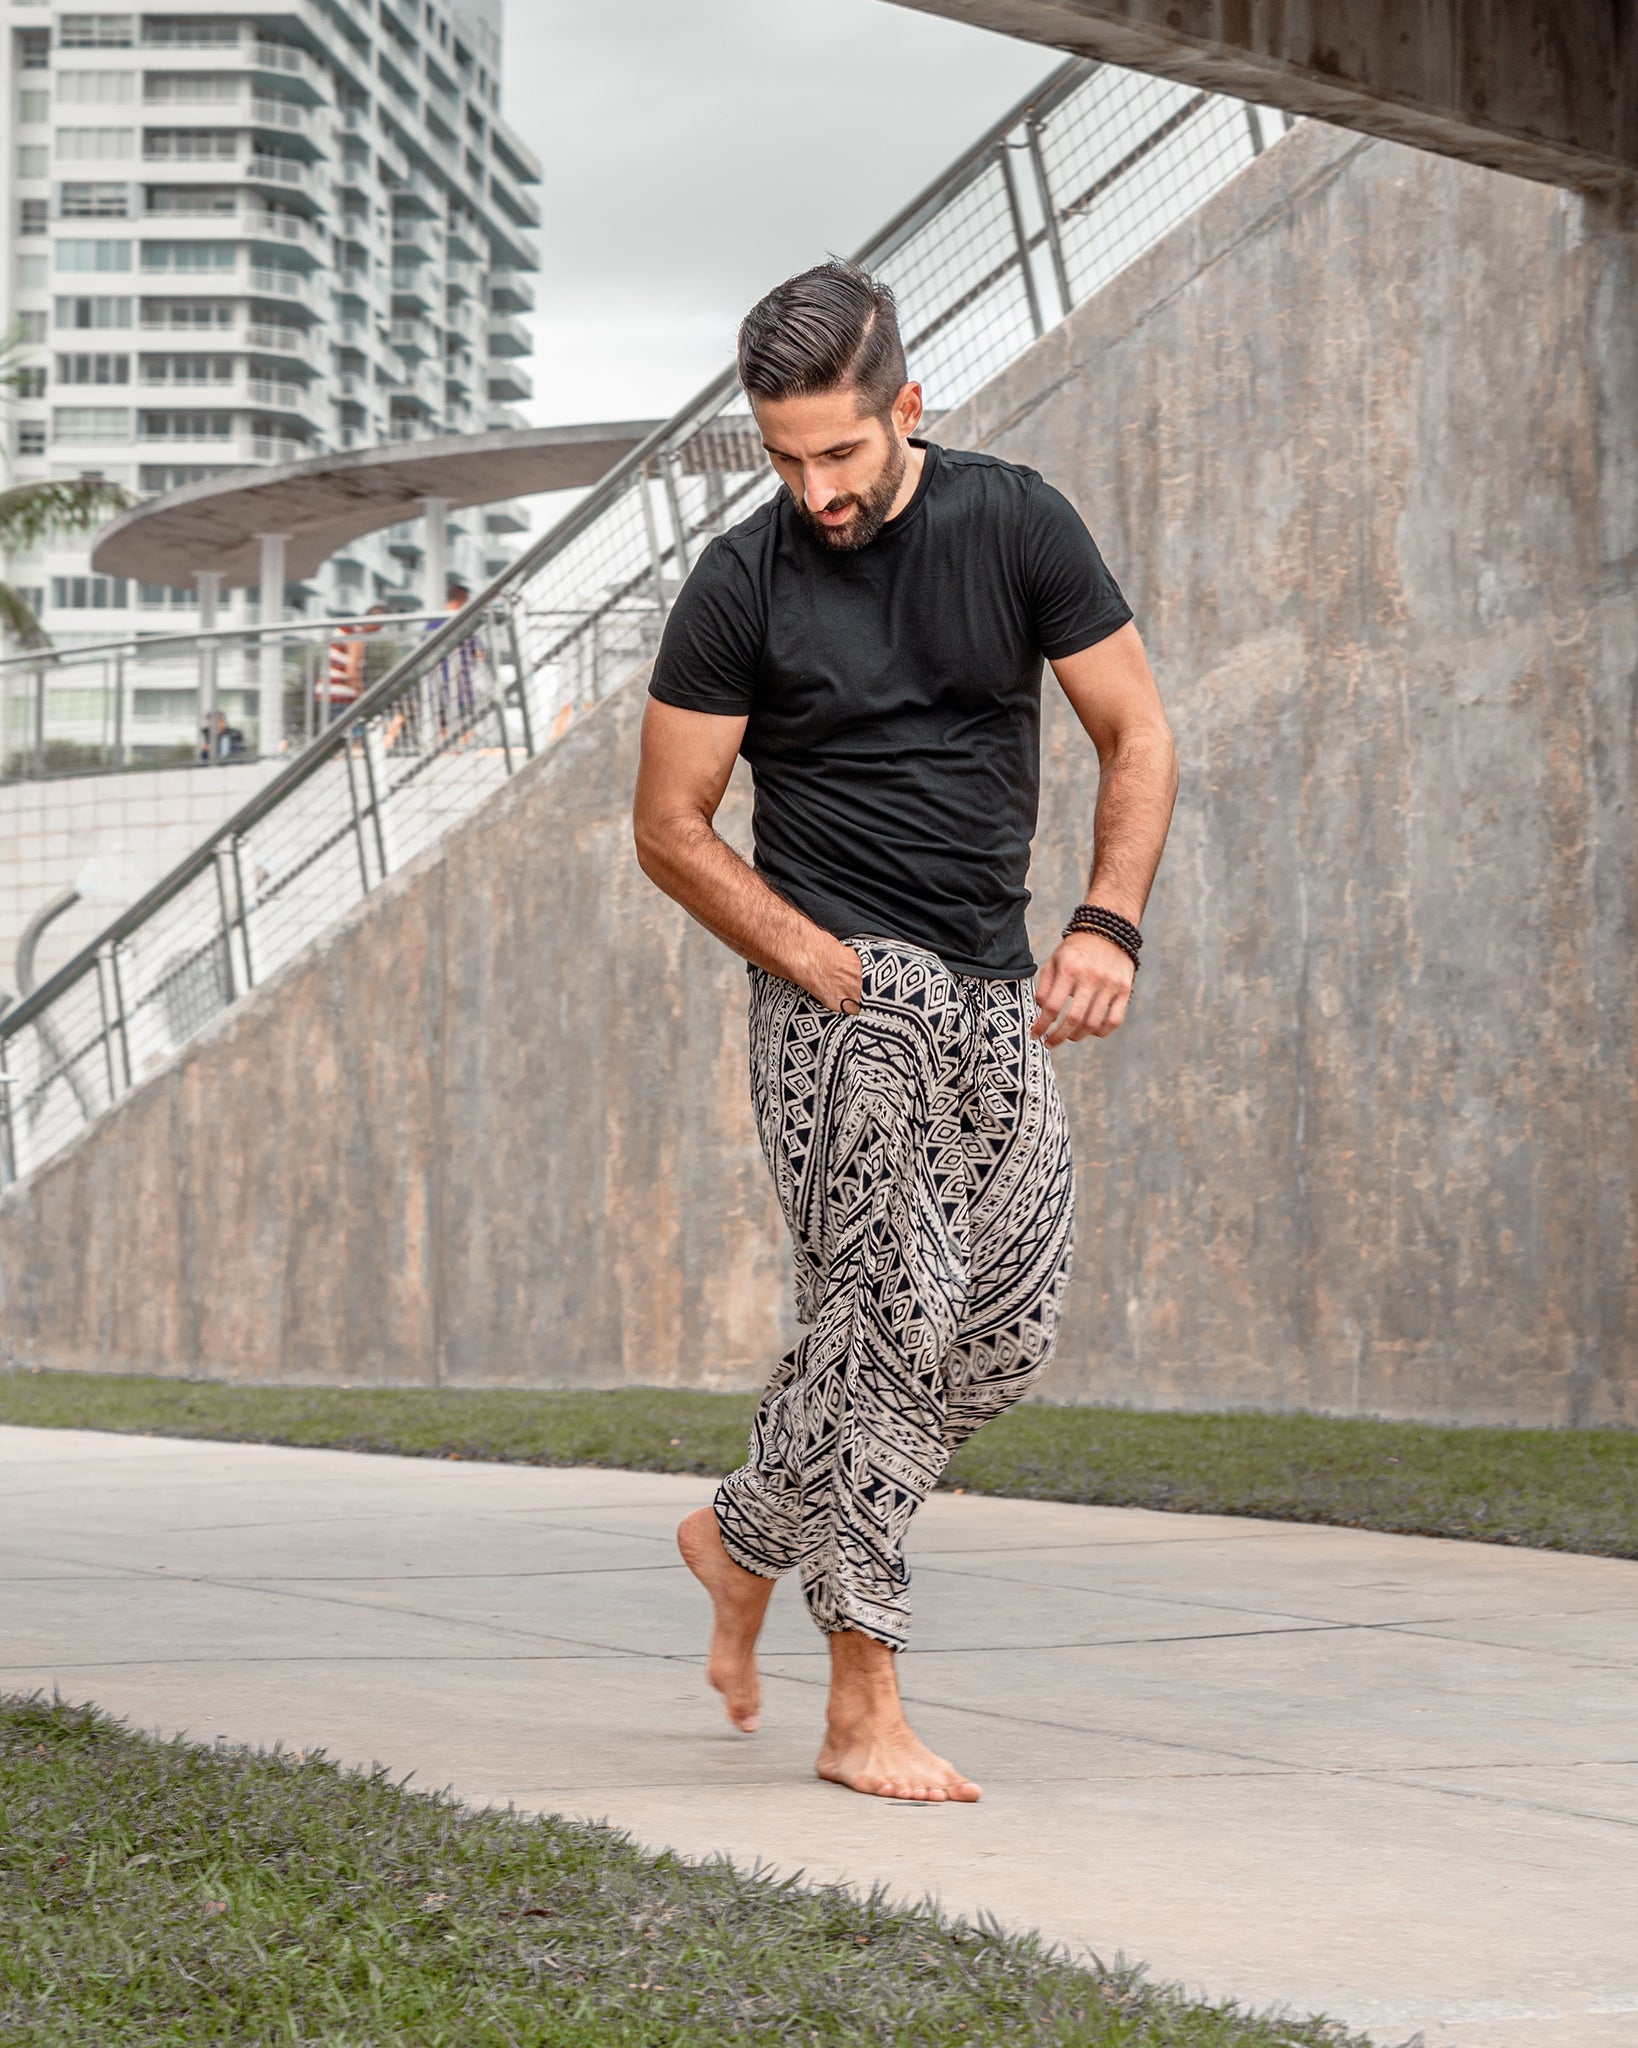 Men Harem Pants 2019 Big Crotch Pants Mens Streetwear Sweatpants Male  Cotton Linen Vintage Joggers Pants Plus Size Y19073001 From B121144507,  $17.11 | DHgate.Com